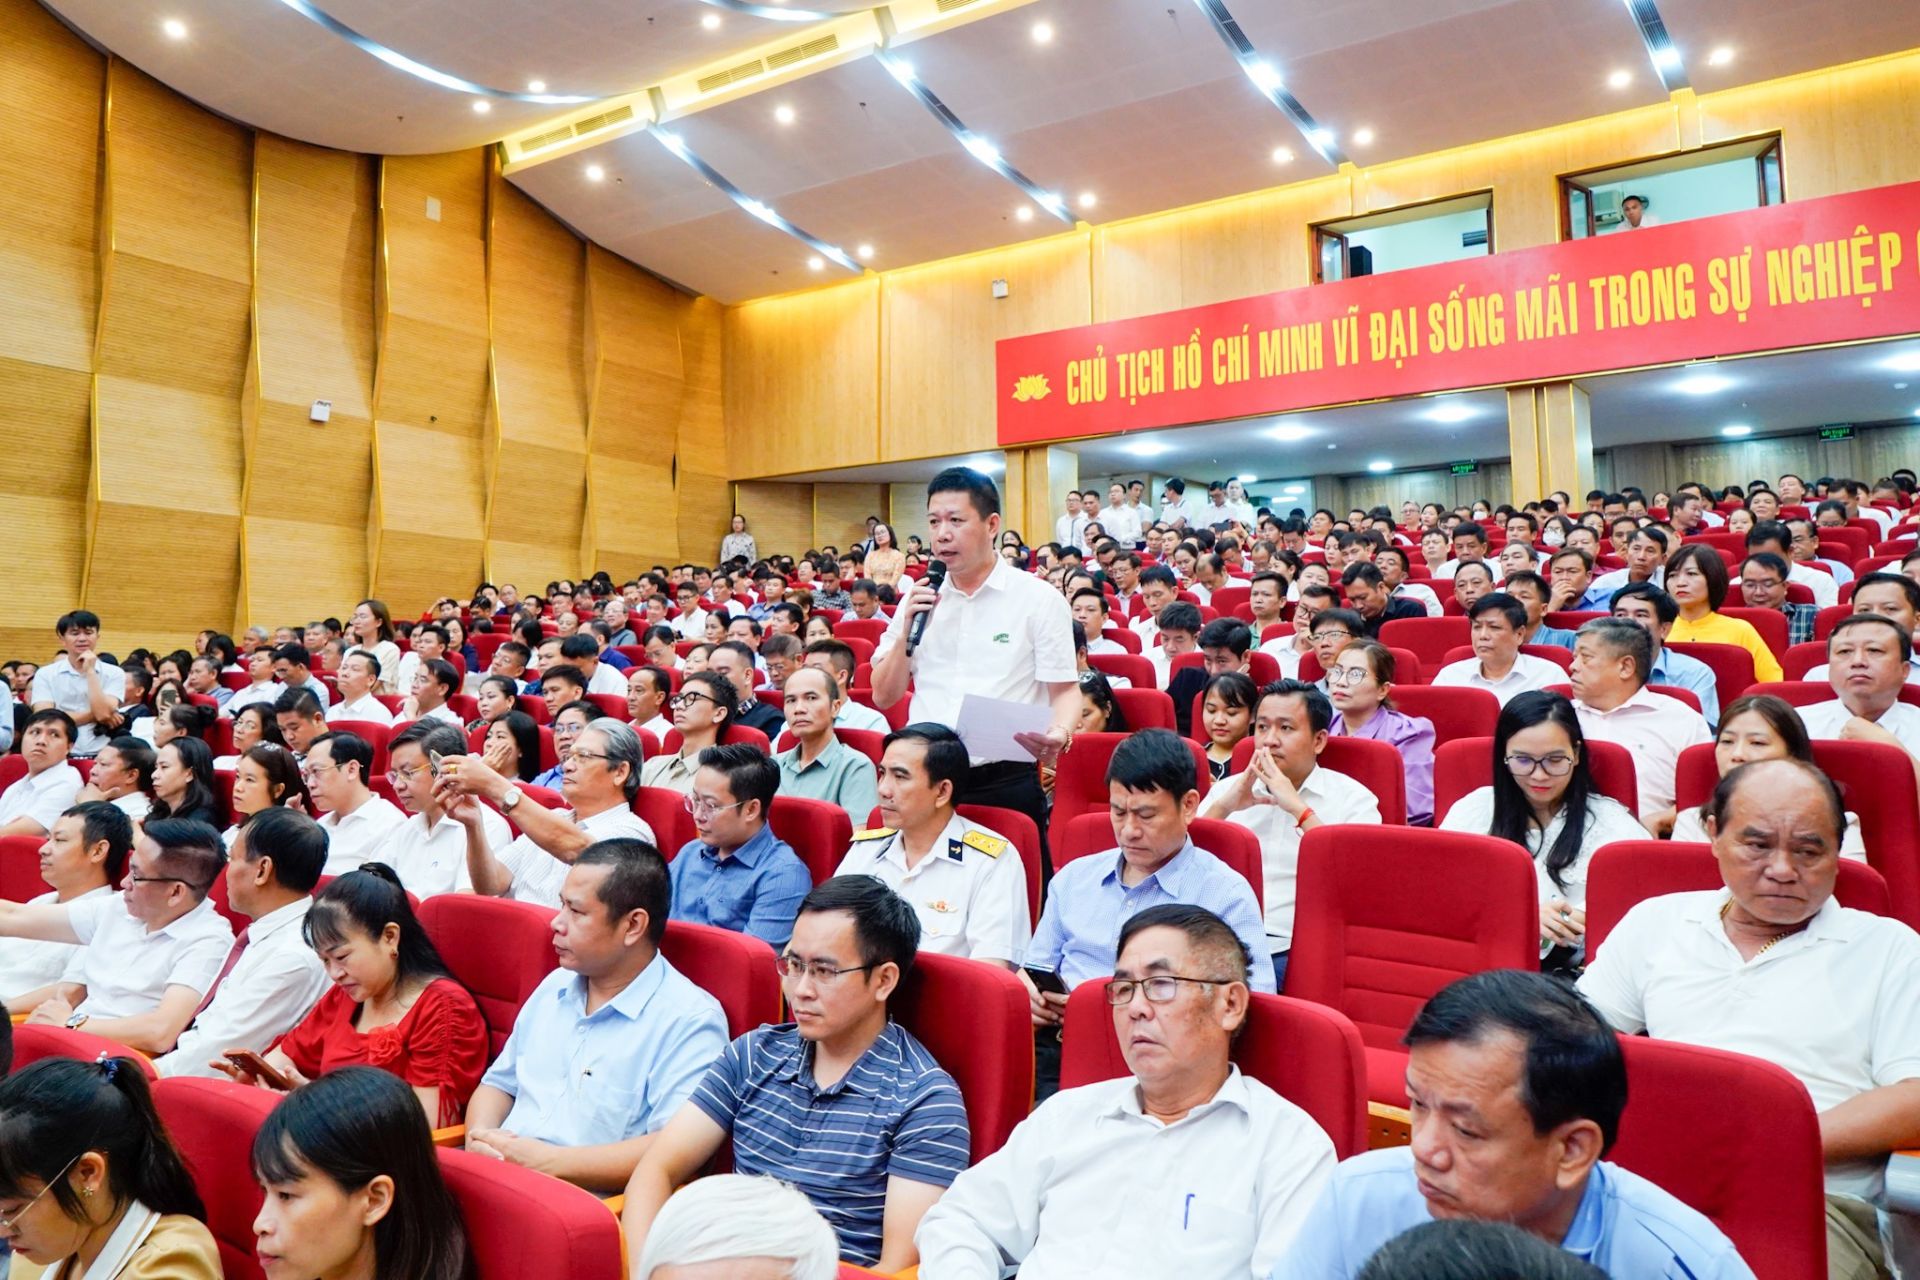 Buổi đối thoại thu hút hơn 600 doanh nghiệp trên địa bàn thành phố Hải Phòng tham dự, với nhiều nội dung kiến nghị gửi tới lãnh đạo thành phố